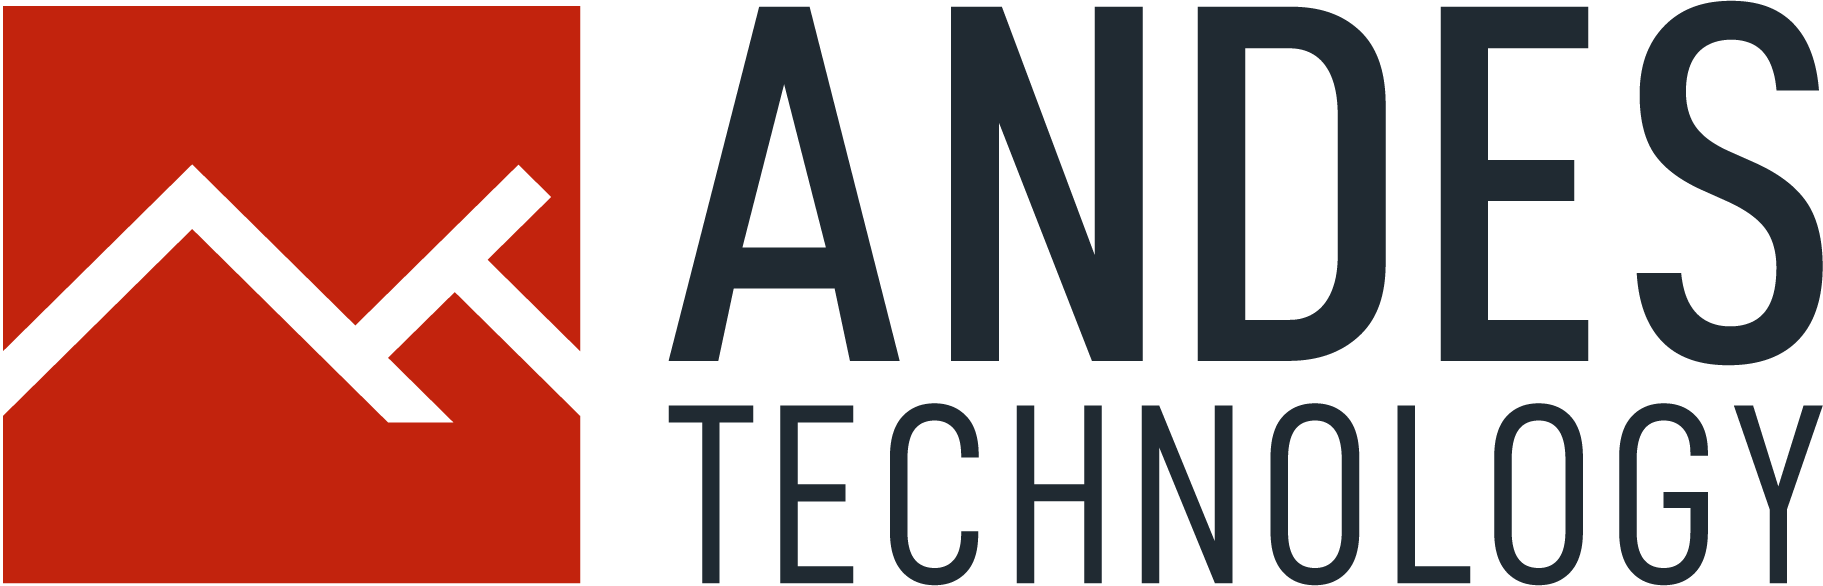 20181226-andes-technology-logotipo-segunda-composicion-final